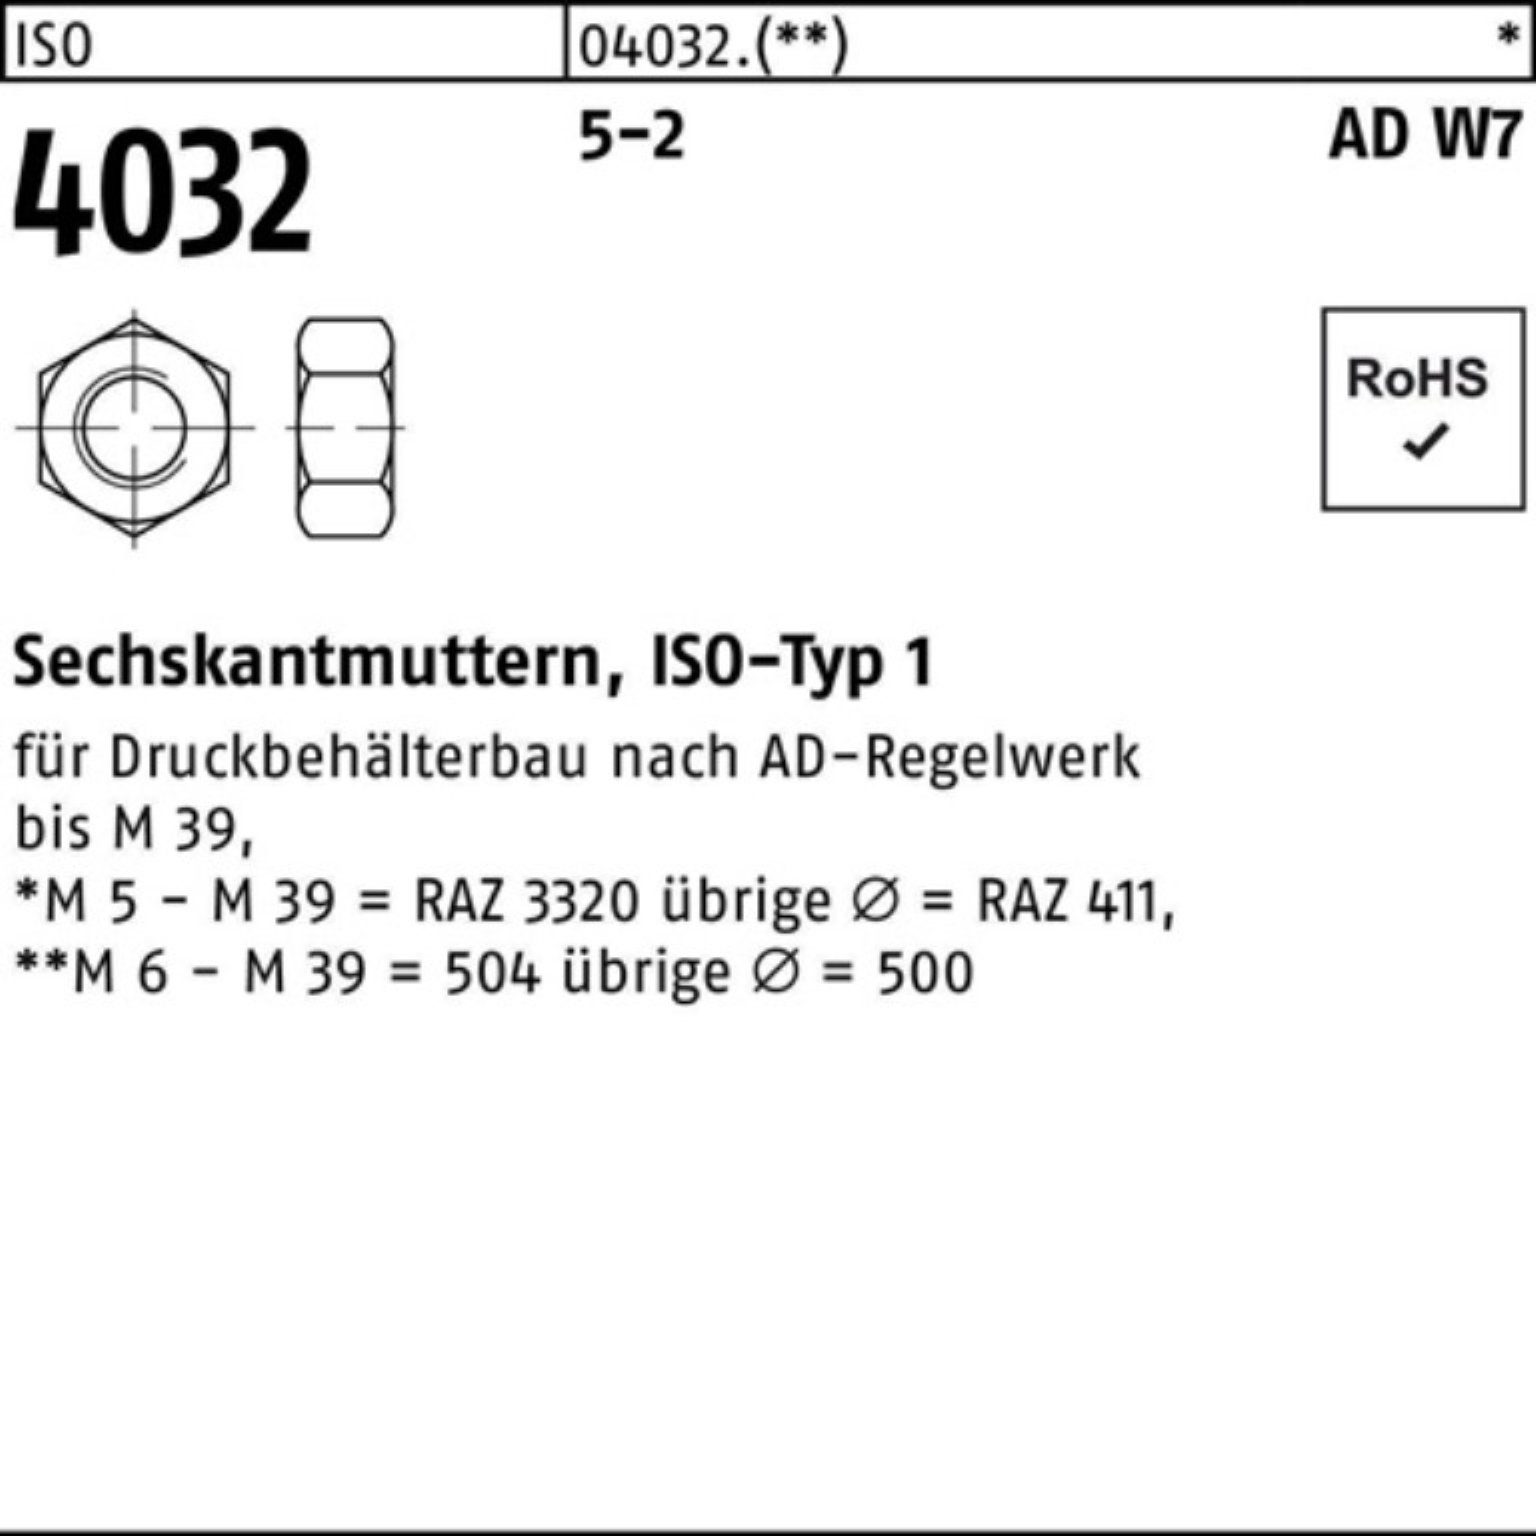 Bufab Muttern 100er Pack Sechskantmutter ISO 4032 M8 5-2 AD W7 100 Stück ISO 4032 5